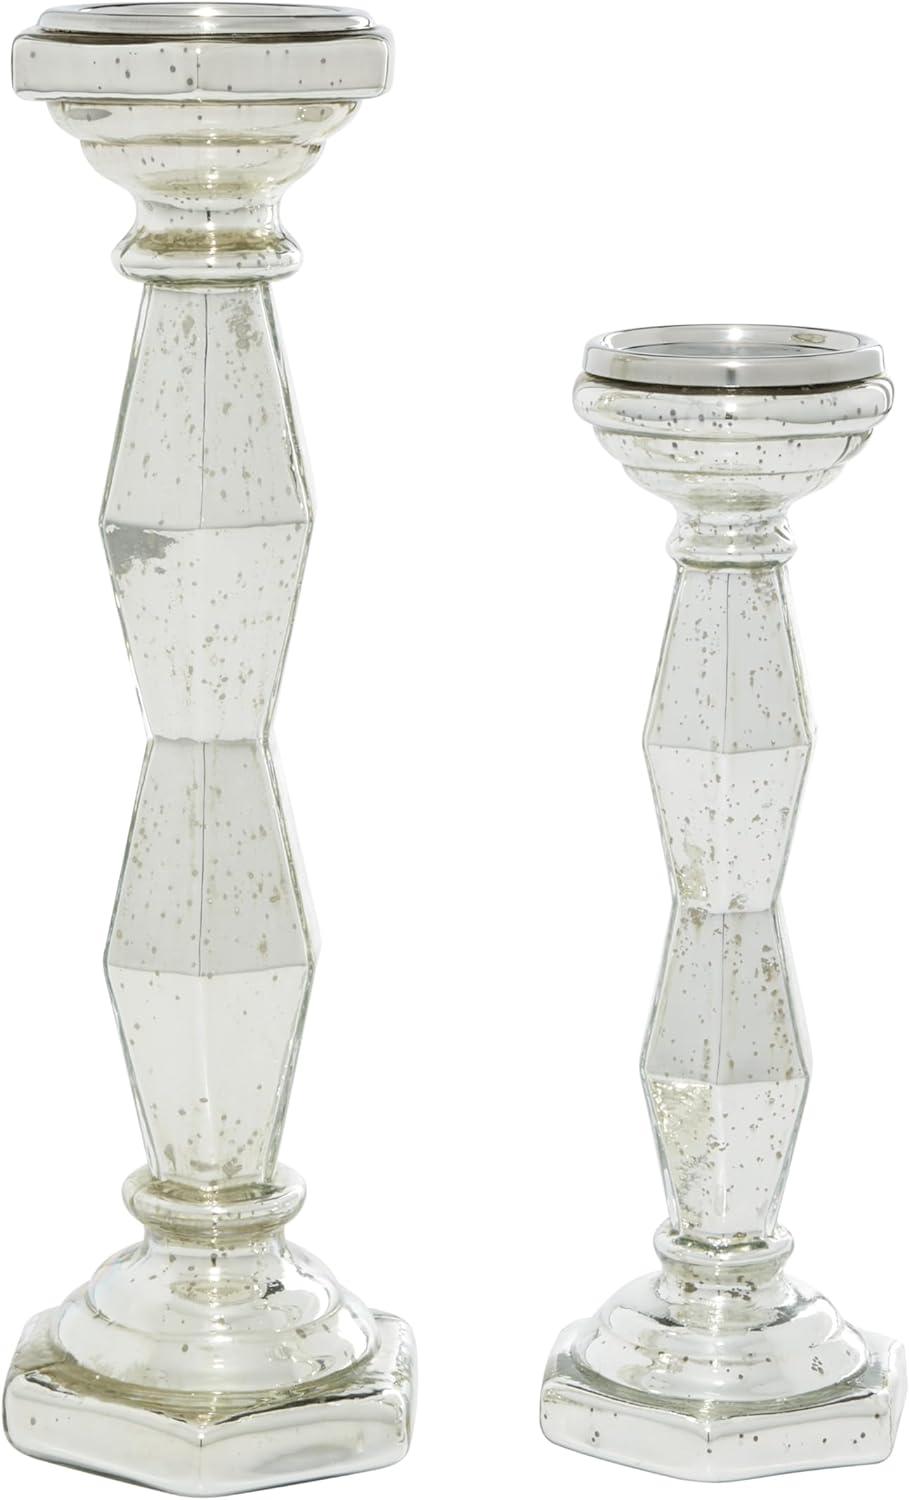 Mercury Finish Glam Glass Candlestick 17.9" Tall